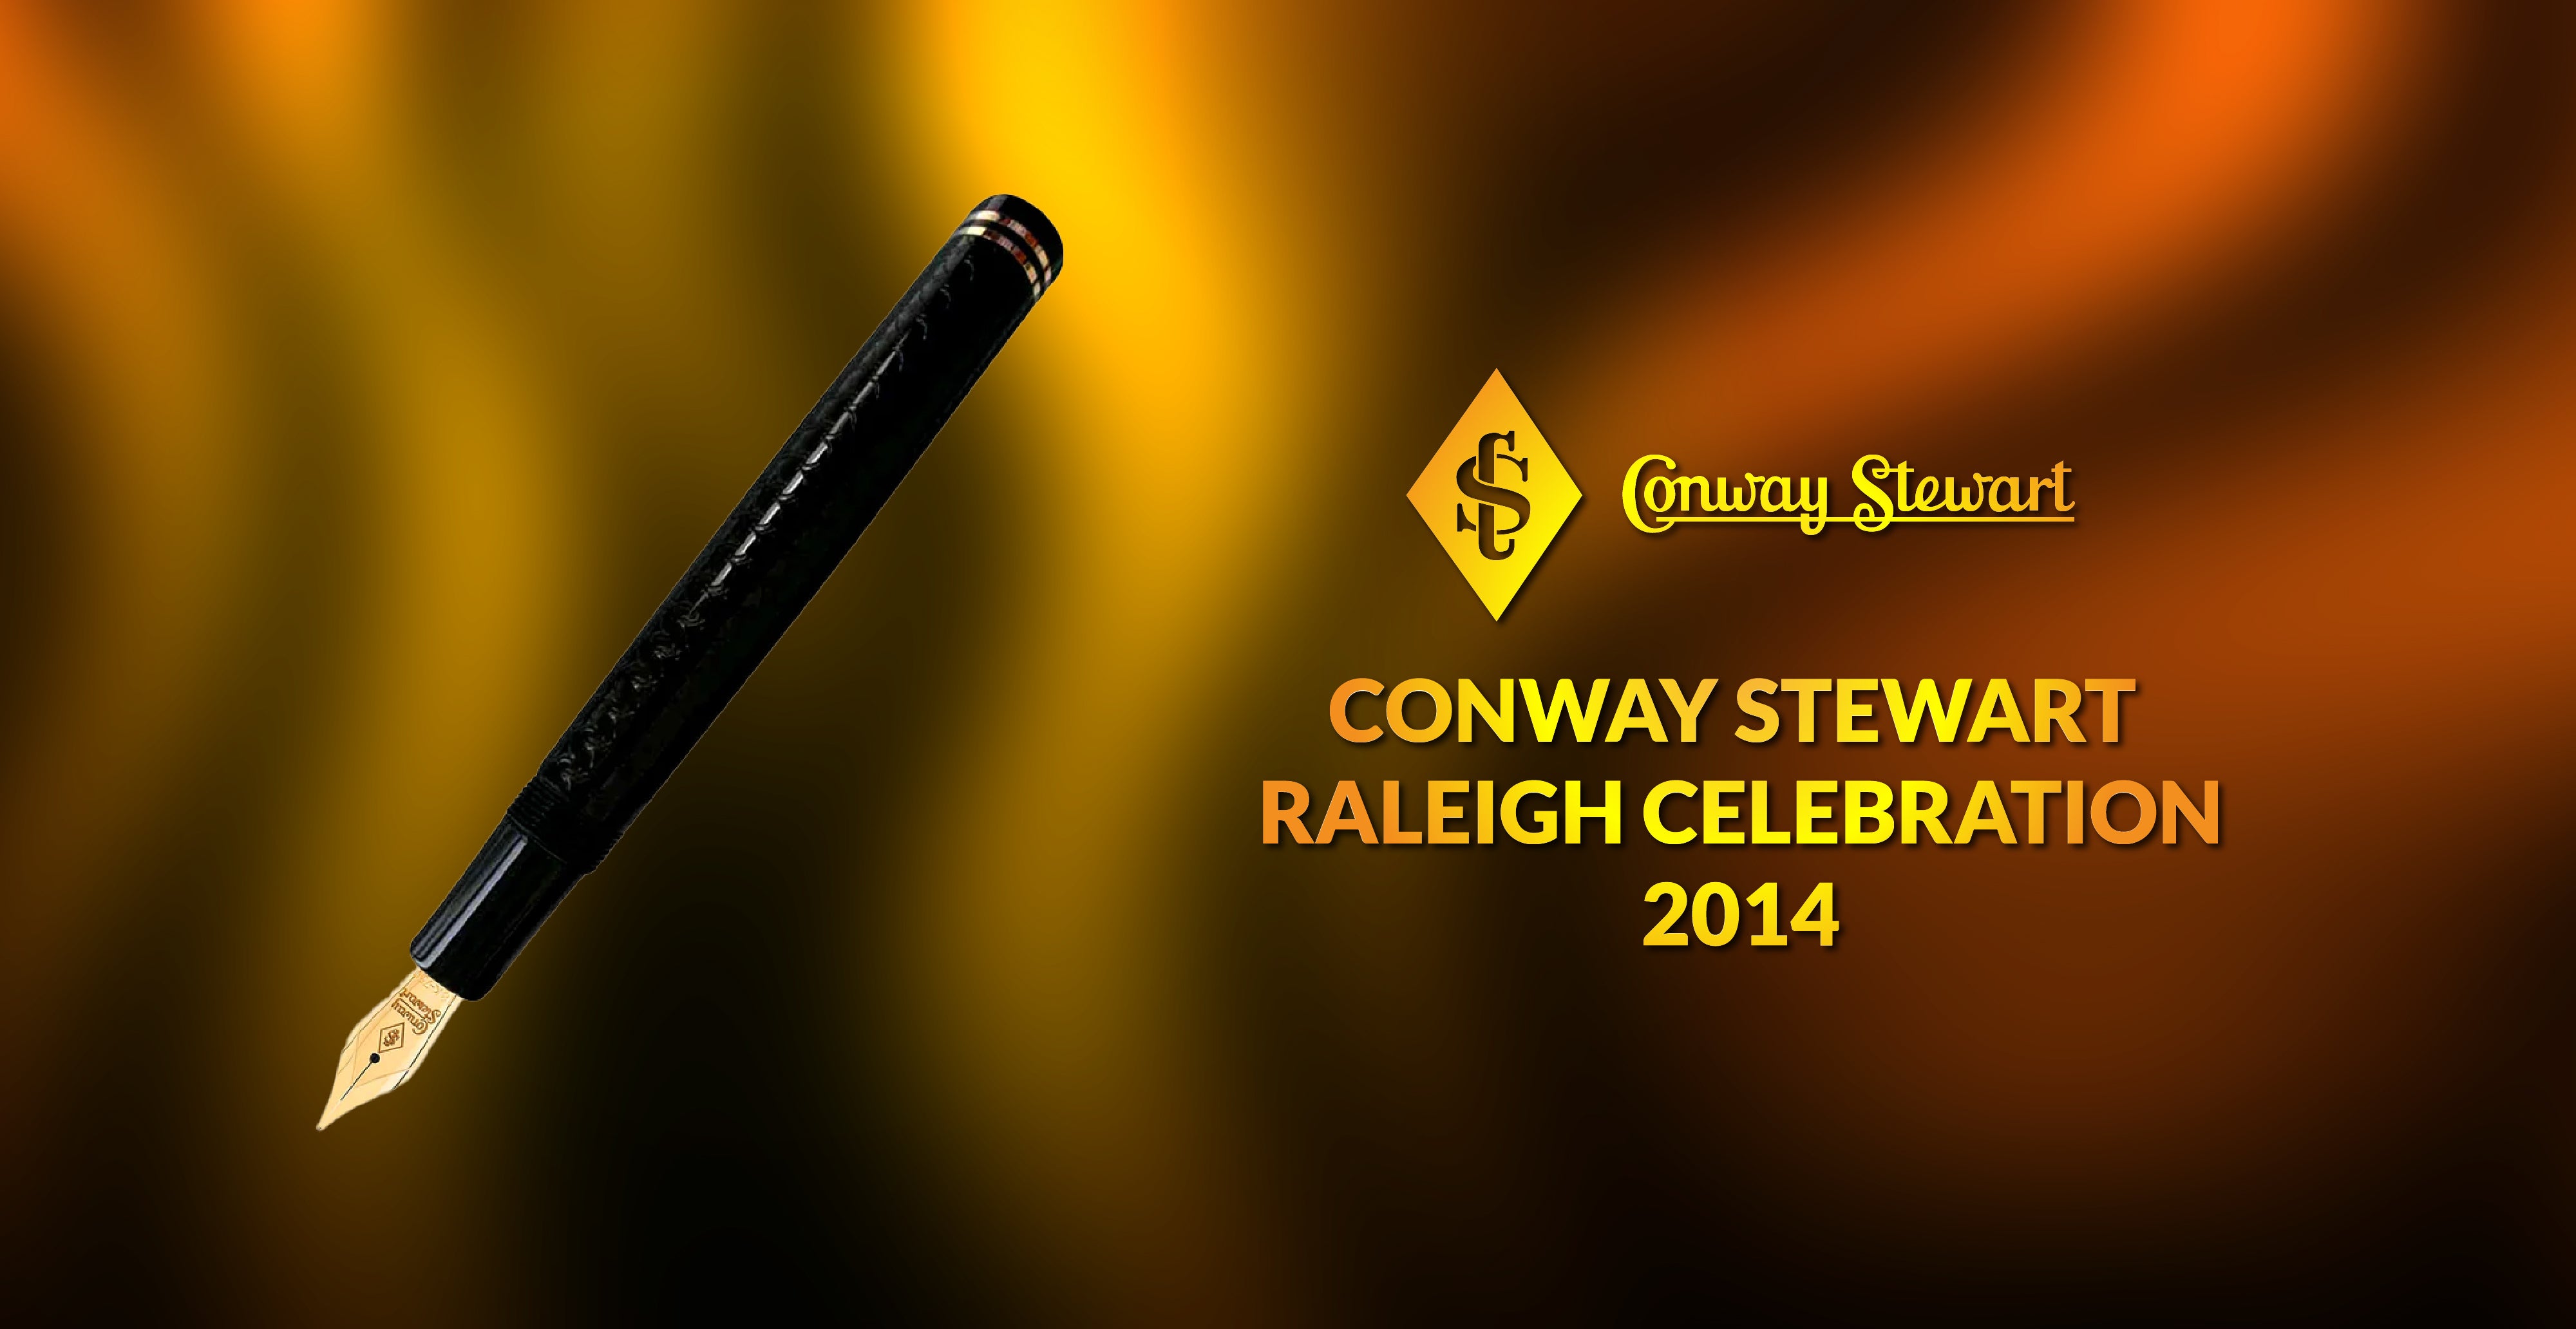 Conway Stewart Raleigh Celebration, 2014